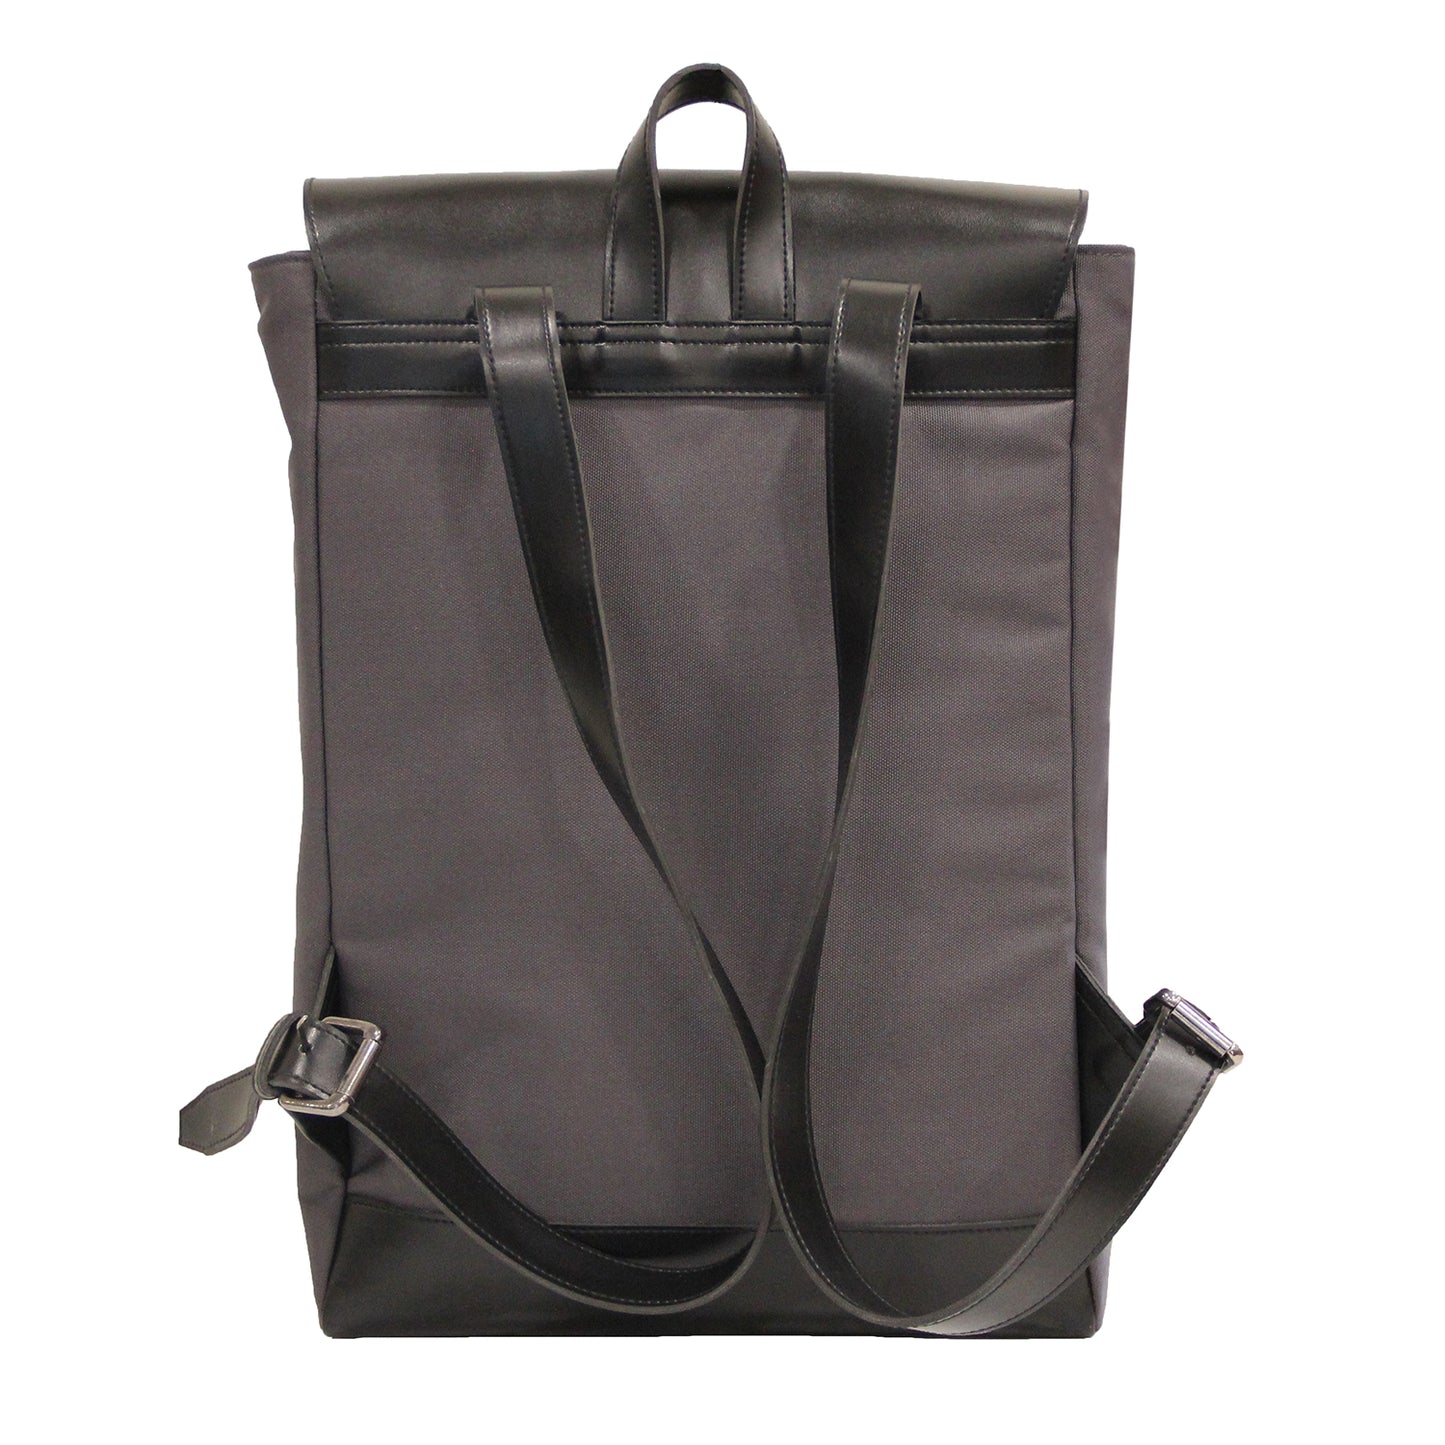 Grey-Black Backpack